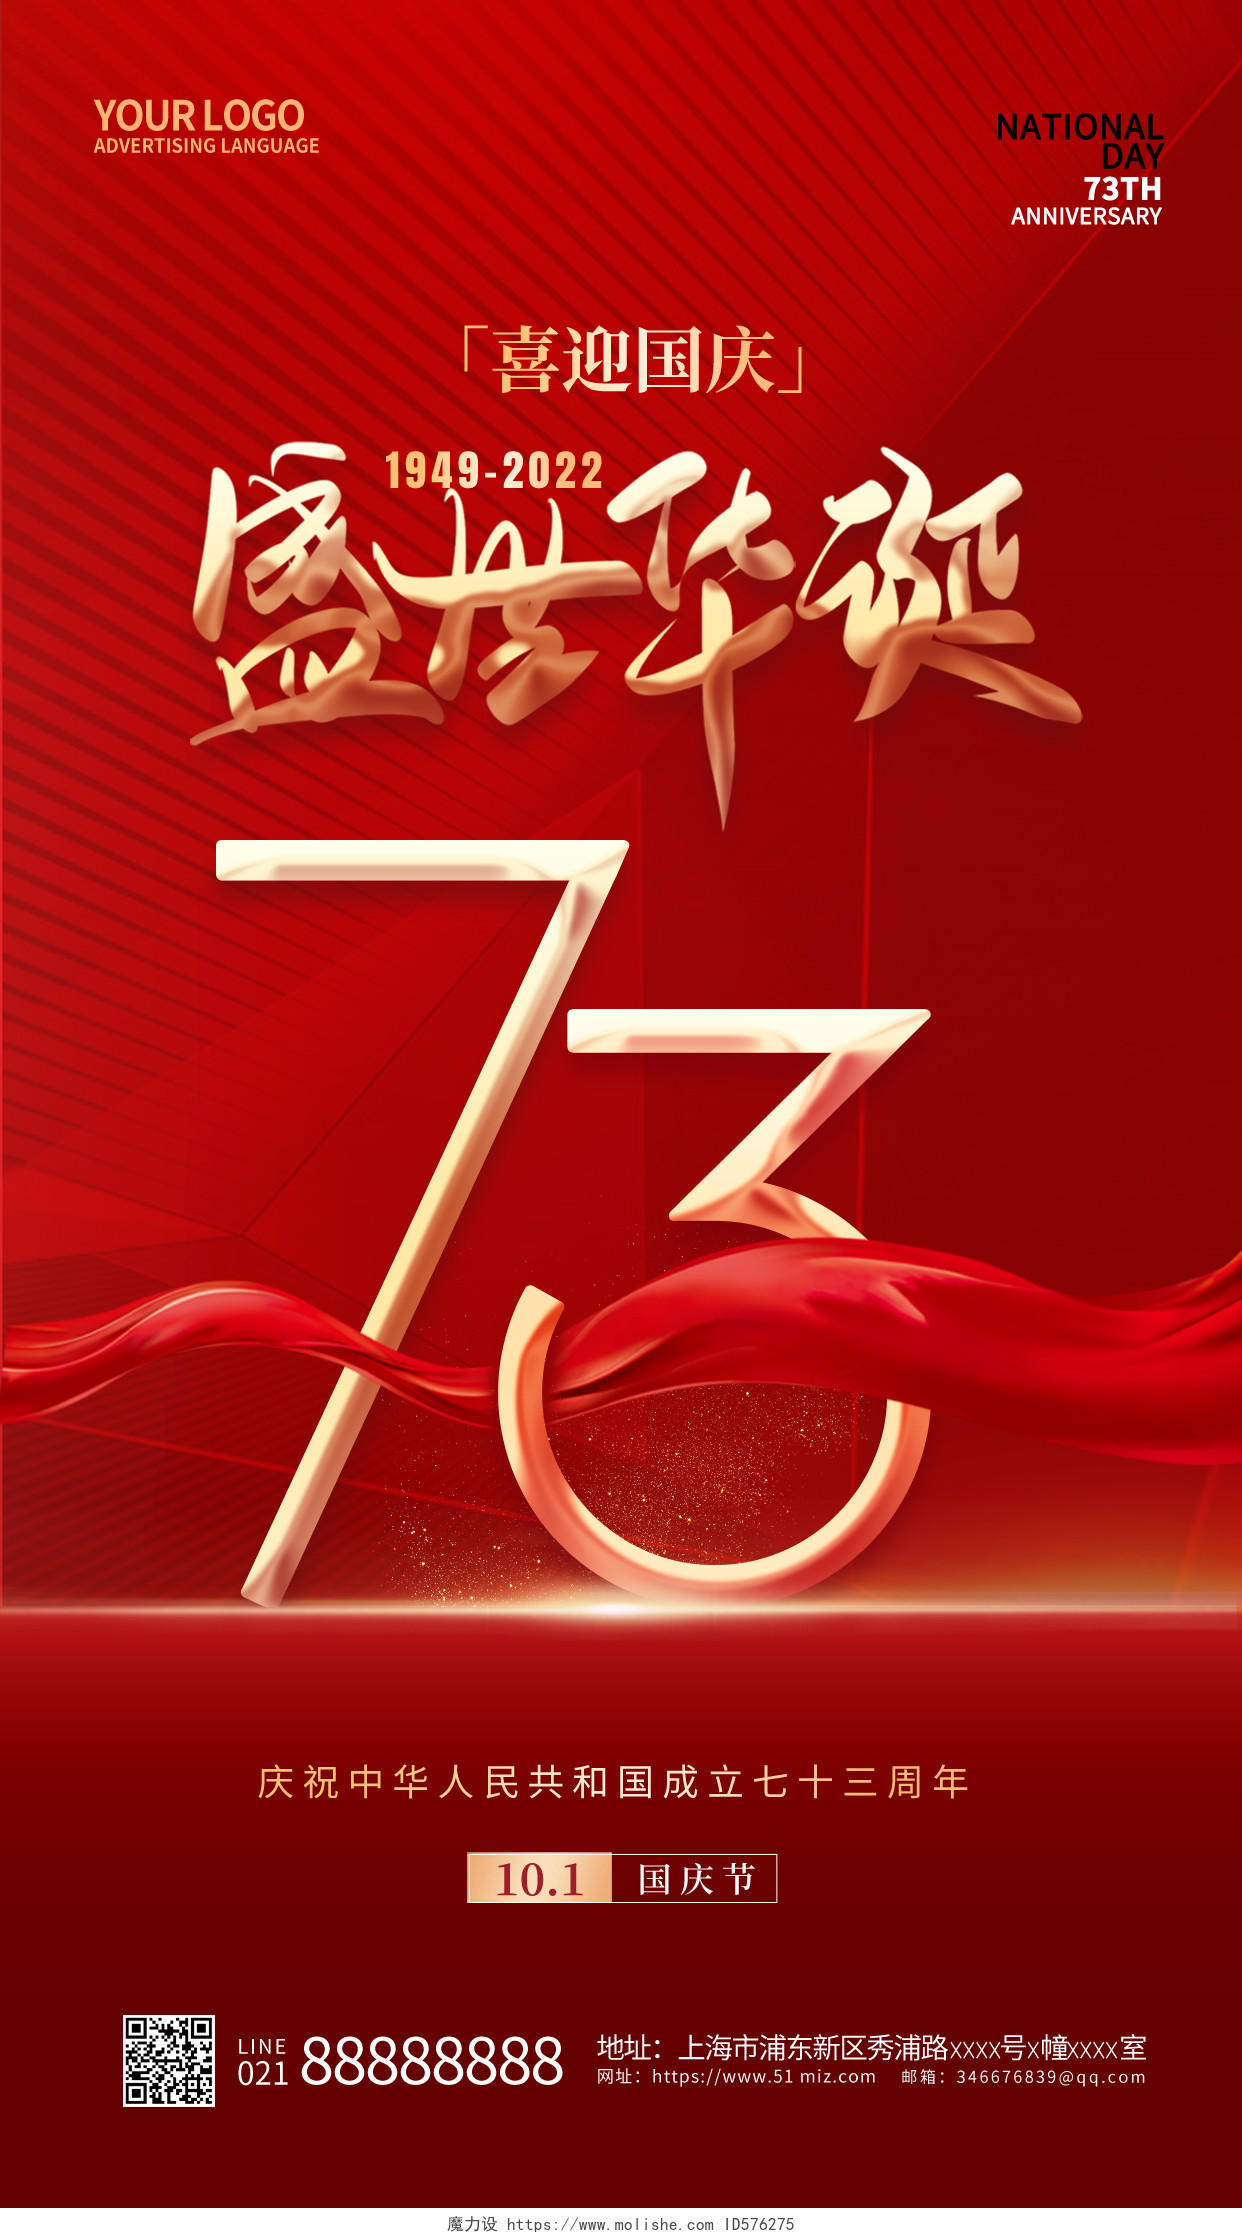 红色简约盛世华诞国庆节手机宣传海报国庆节国庆